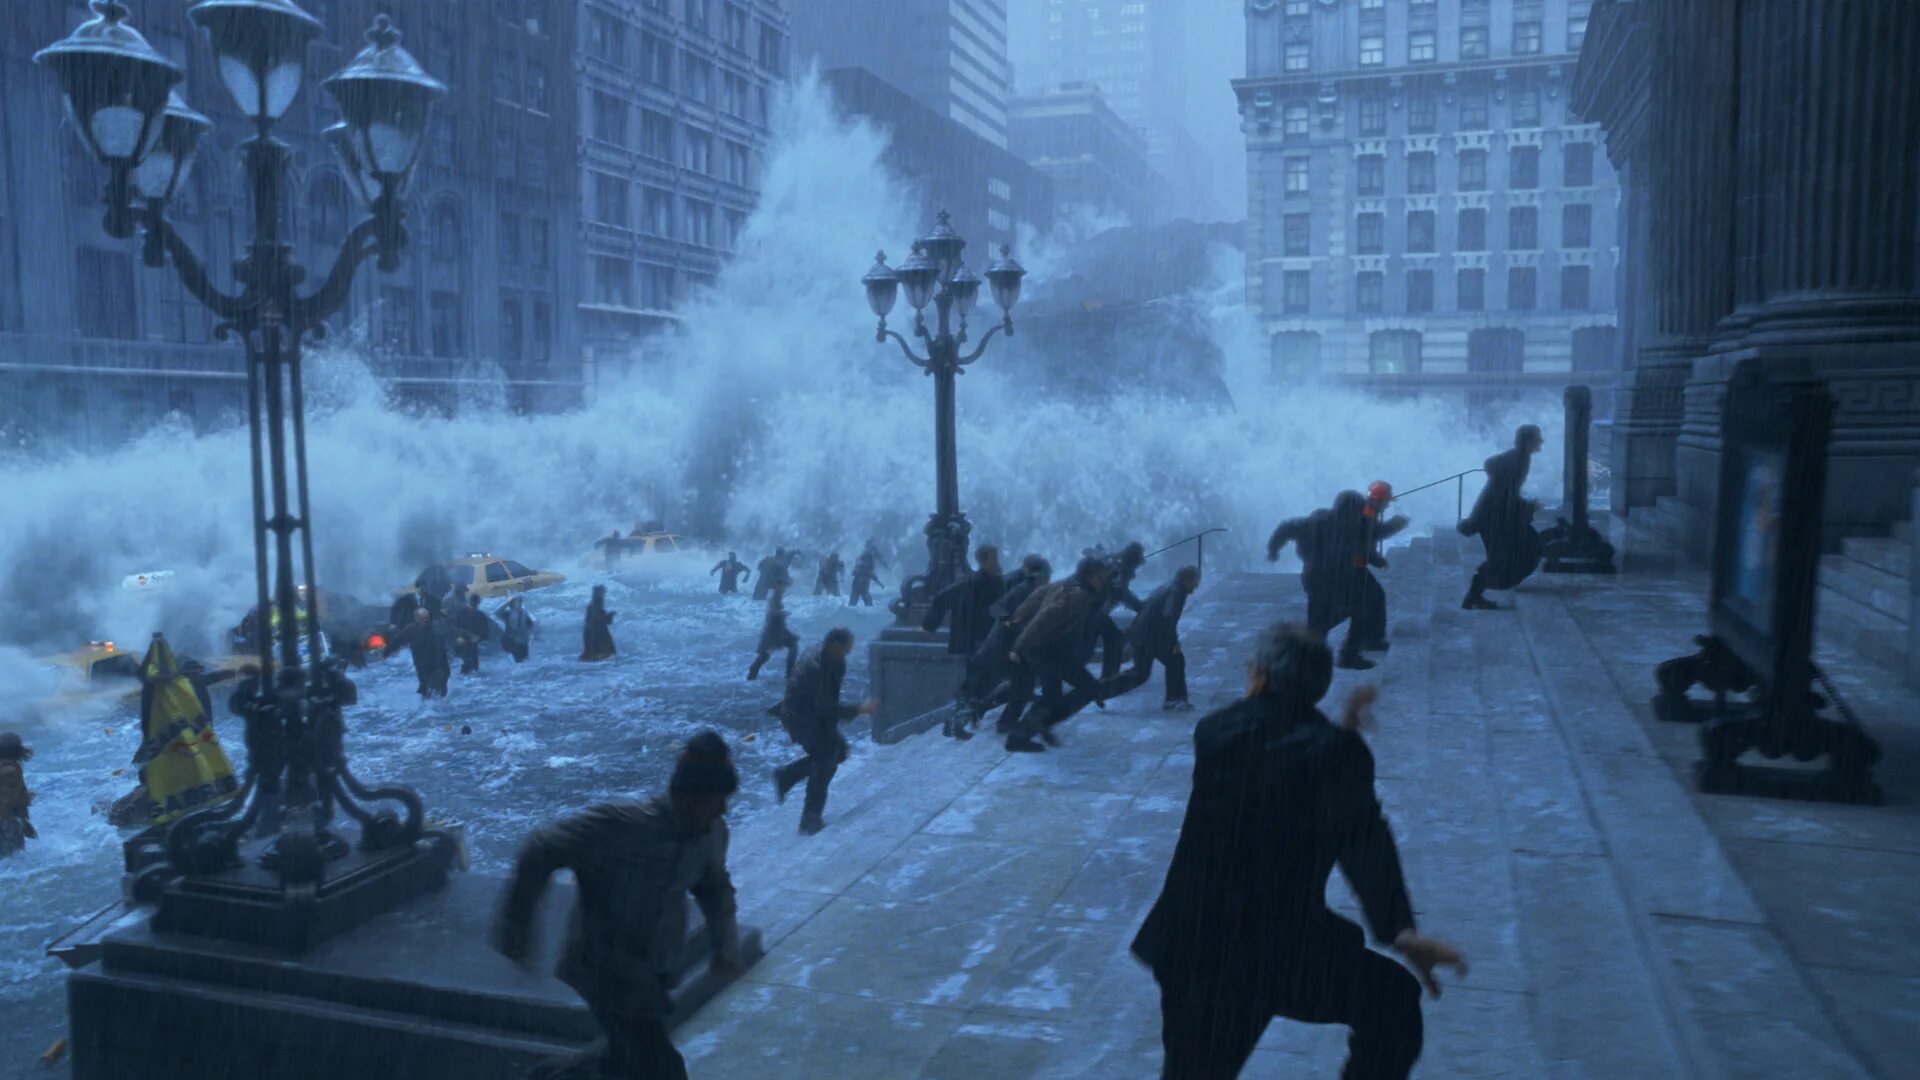 Весь город начал замерзать название. "Послезавтра" США, 2004 Г.. Роланд Эммерих послезавтра.